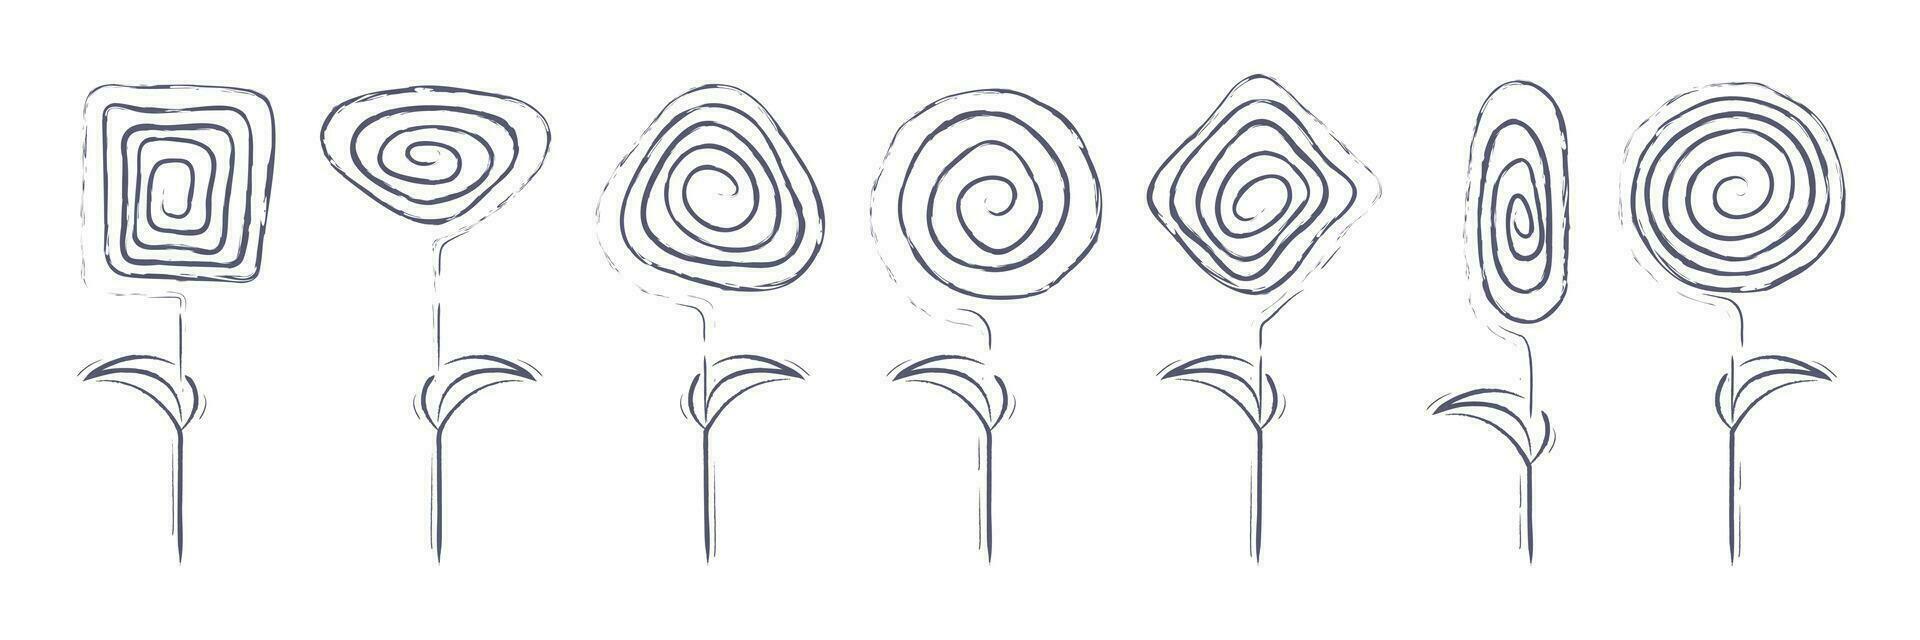 abstrait fleurs isolé. ensemble de spirale géométrique formes dans le forme de fleurs. moderne linéaire éléments pour affiches, cosmétiques, cartes, invitation modèles, textile et grafic conception. vecteur. vecteur